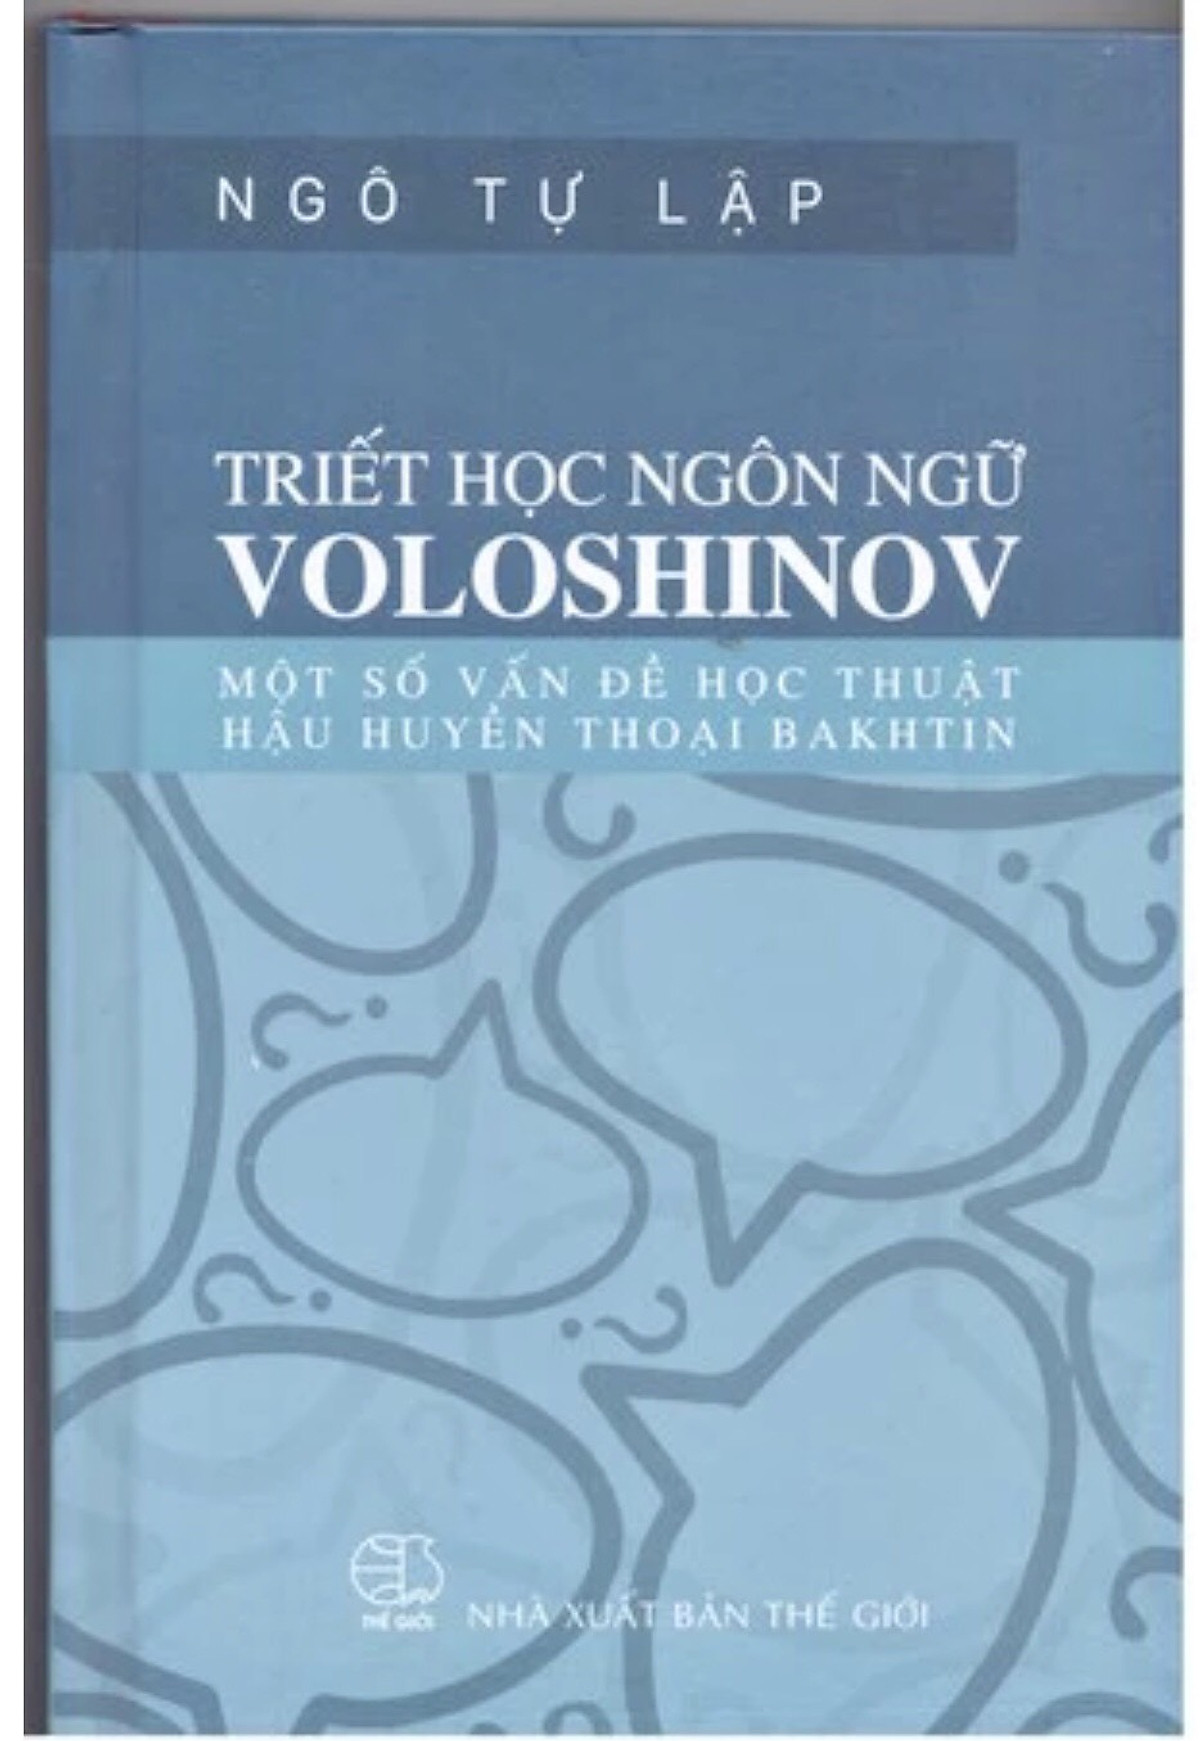 Triết học ngôn ngữ Voloshinov: Một số vấn đề học thuật hậu huyền thoại Bakhtin - TS. Ngô Tự Lập - (bìa cứng)